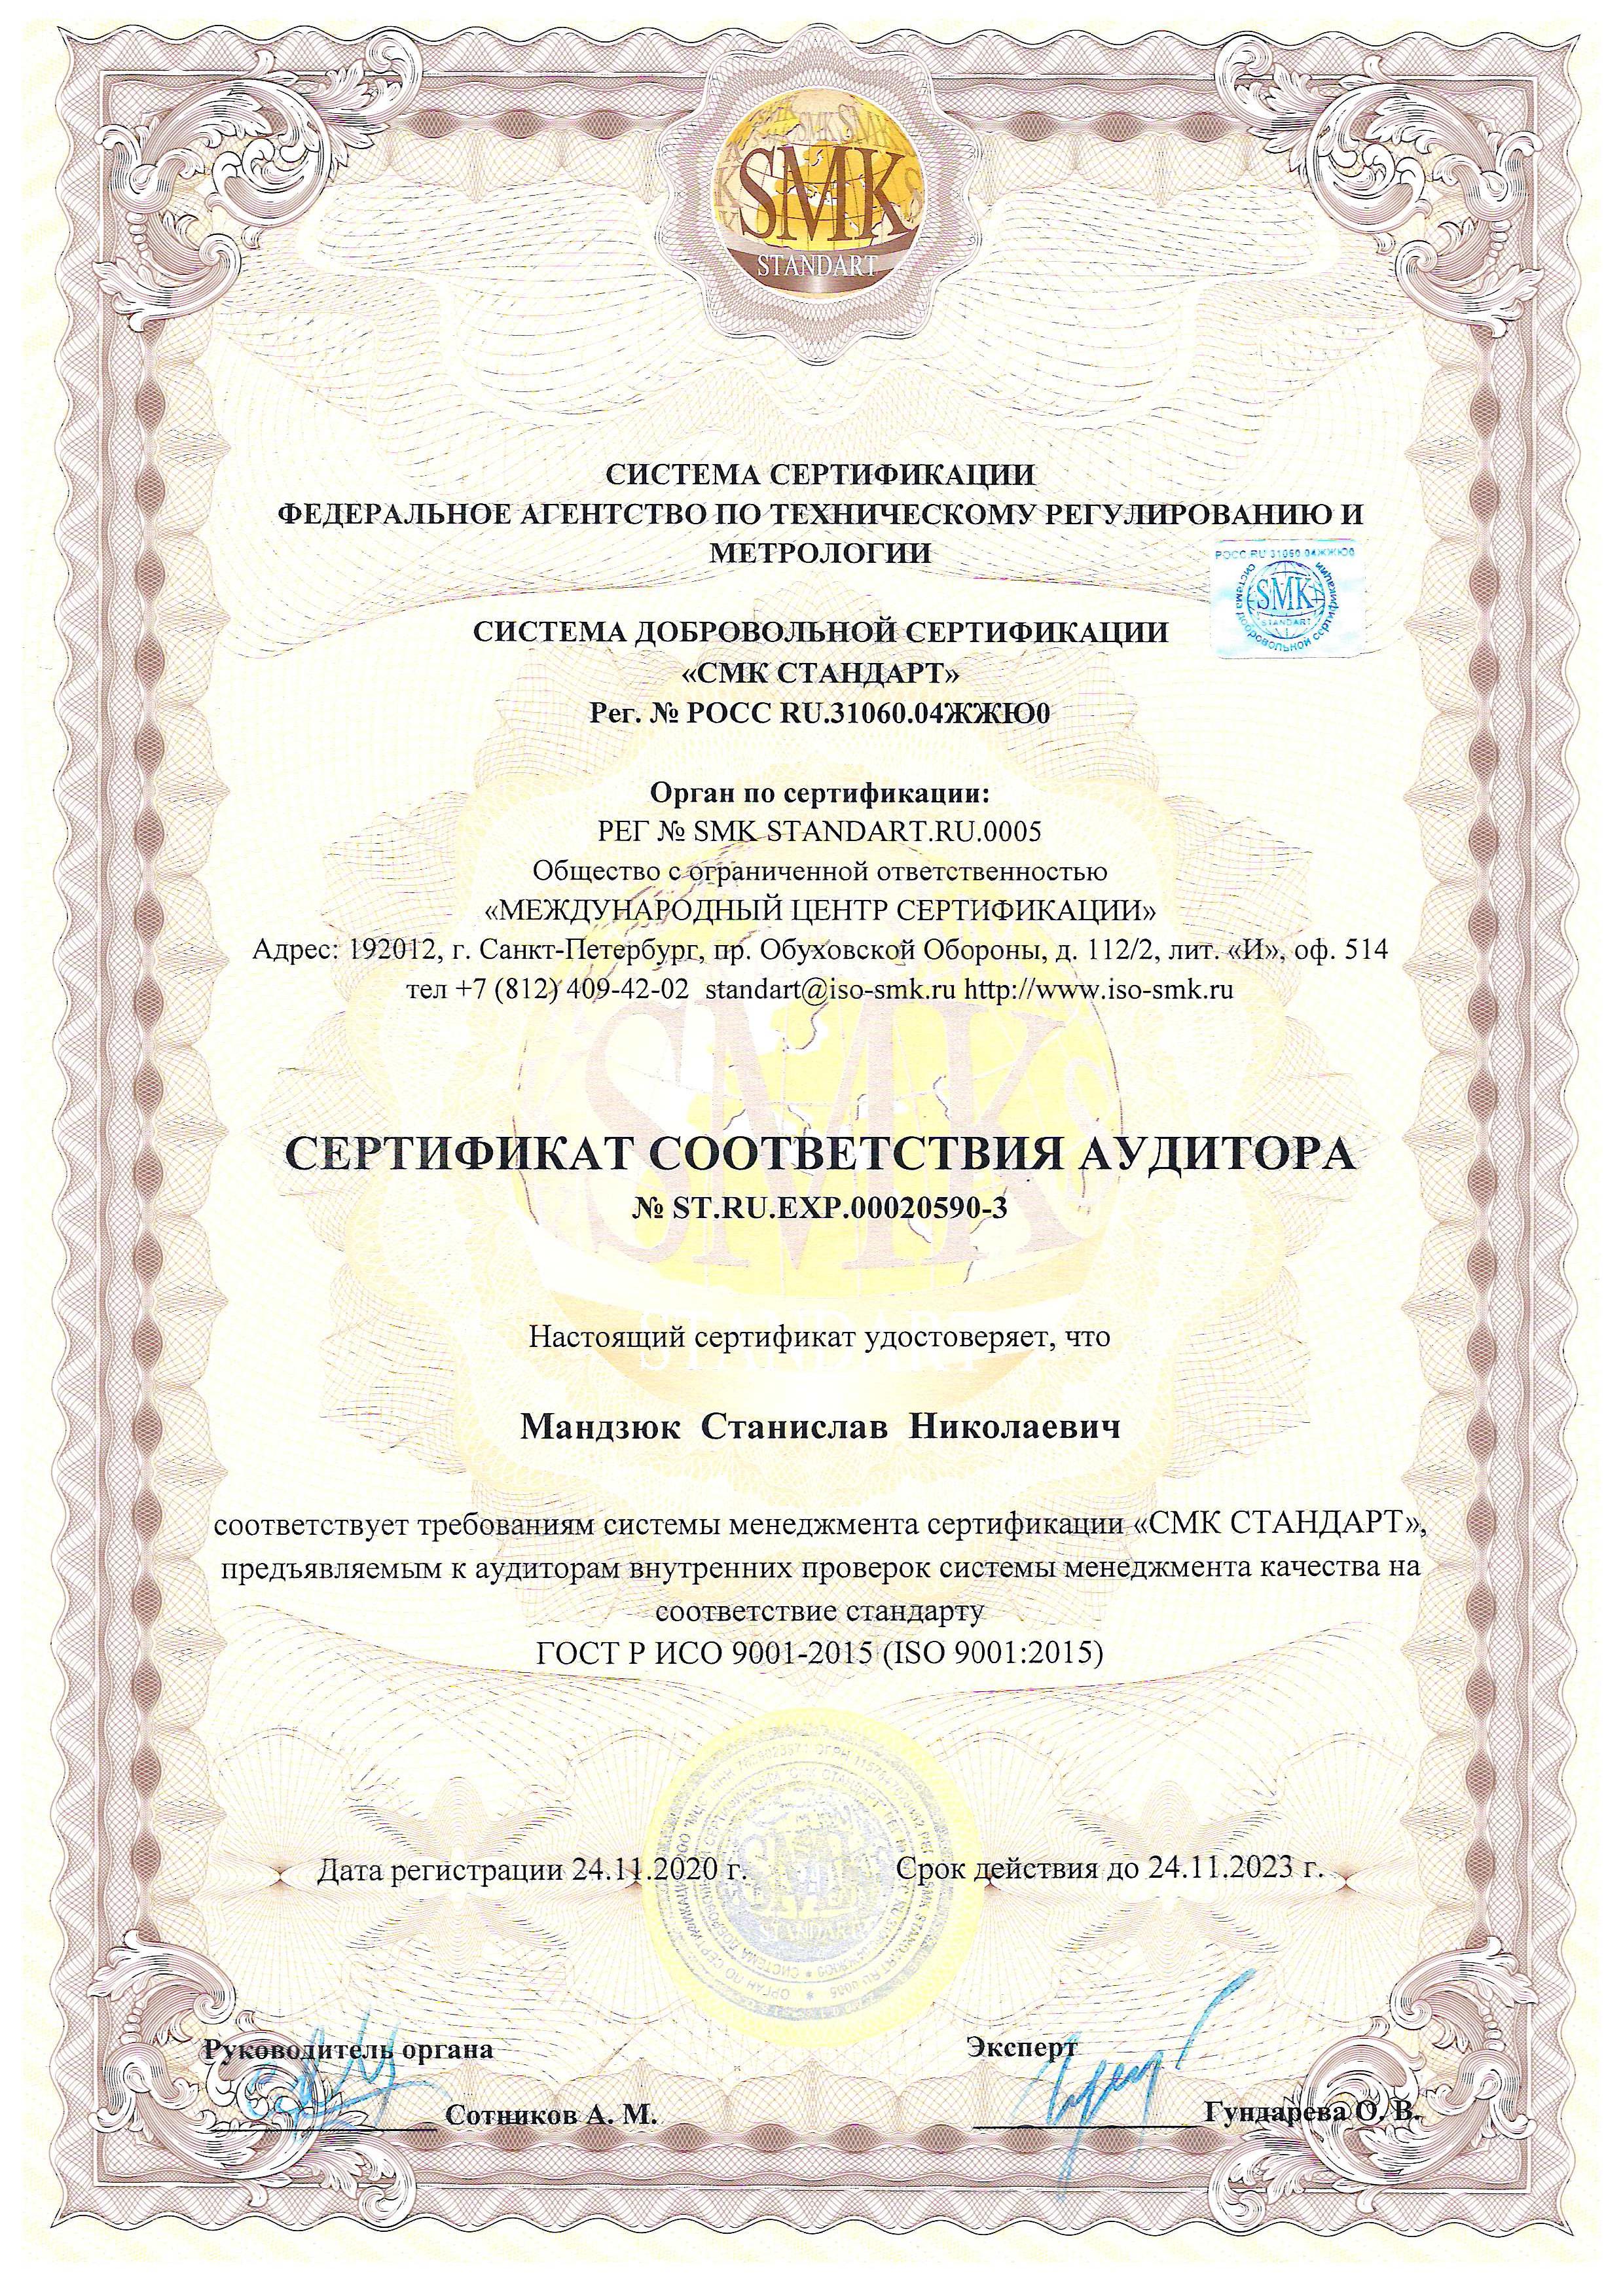 Сертификат Мандзюк